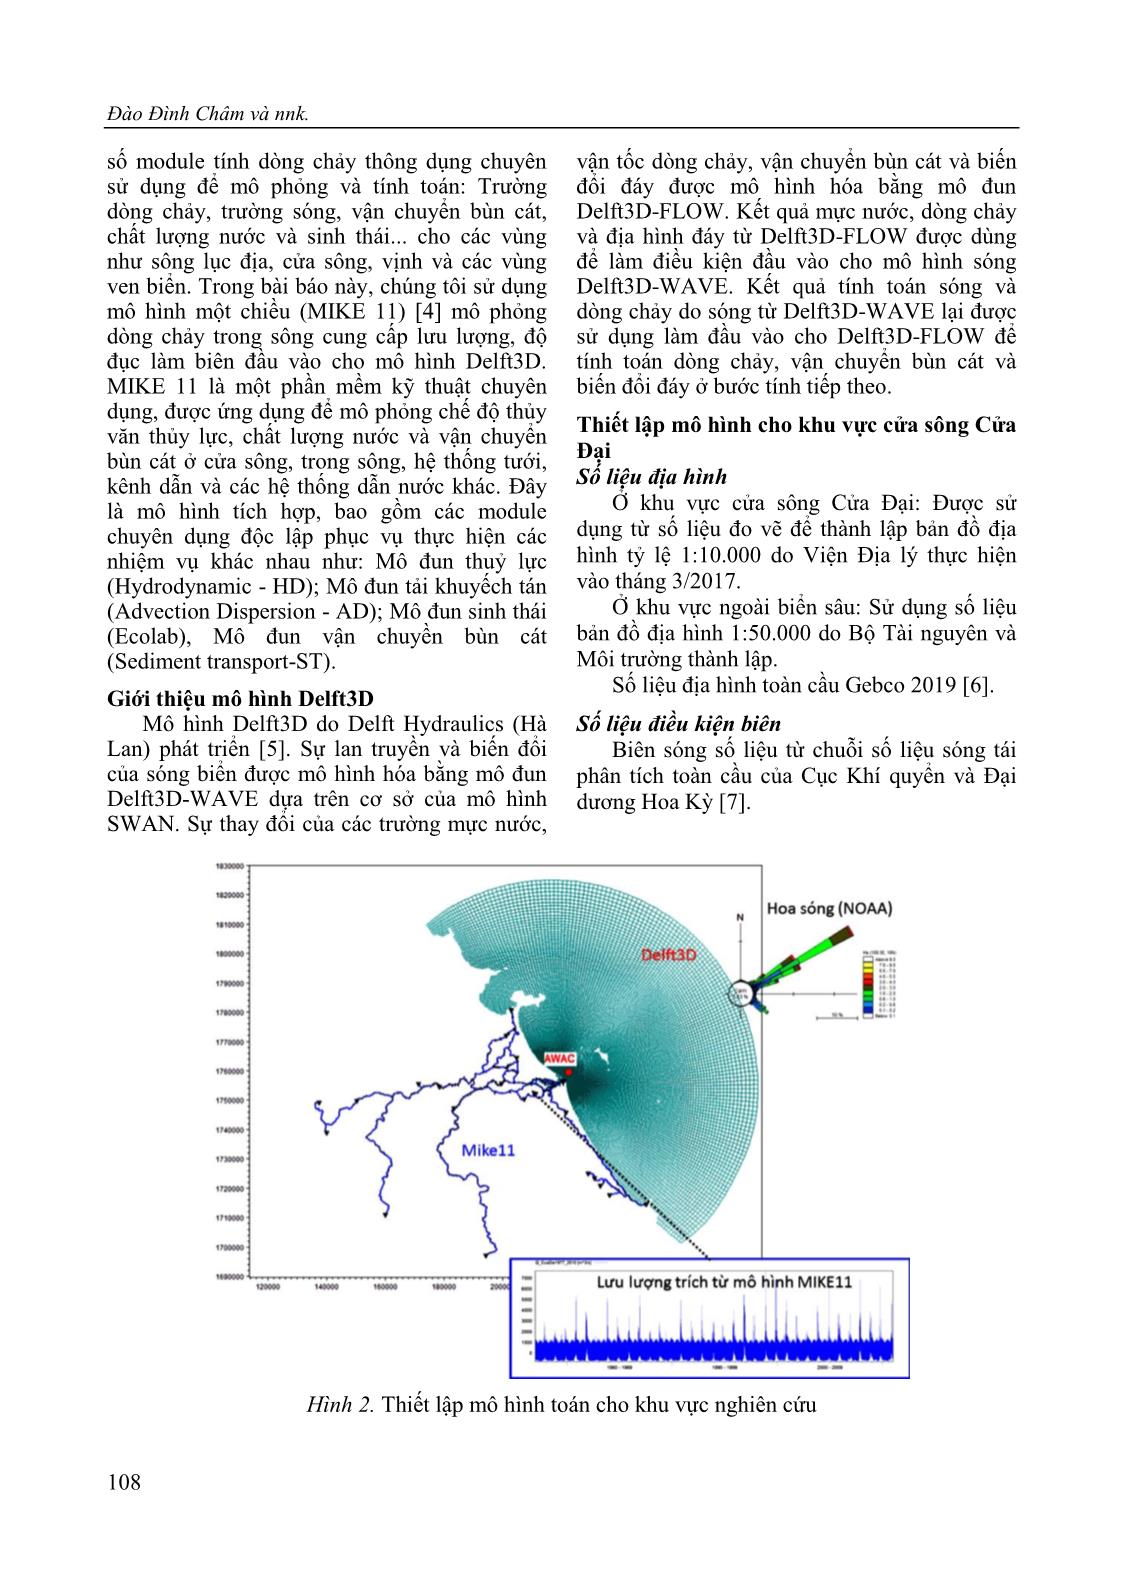 Nghiên cứu ảnh hưởng của chế độ thủy - Thạch động lực đến biến động địa hình vùng cửa sông Cửa Đại, tỉnh Quảng Nam trang 4